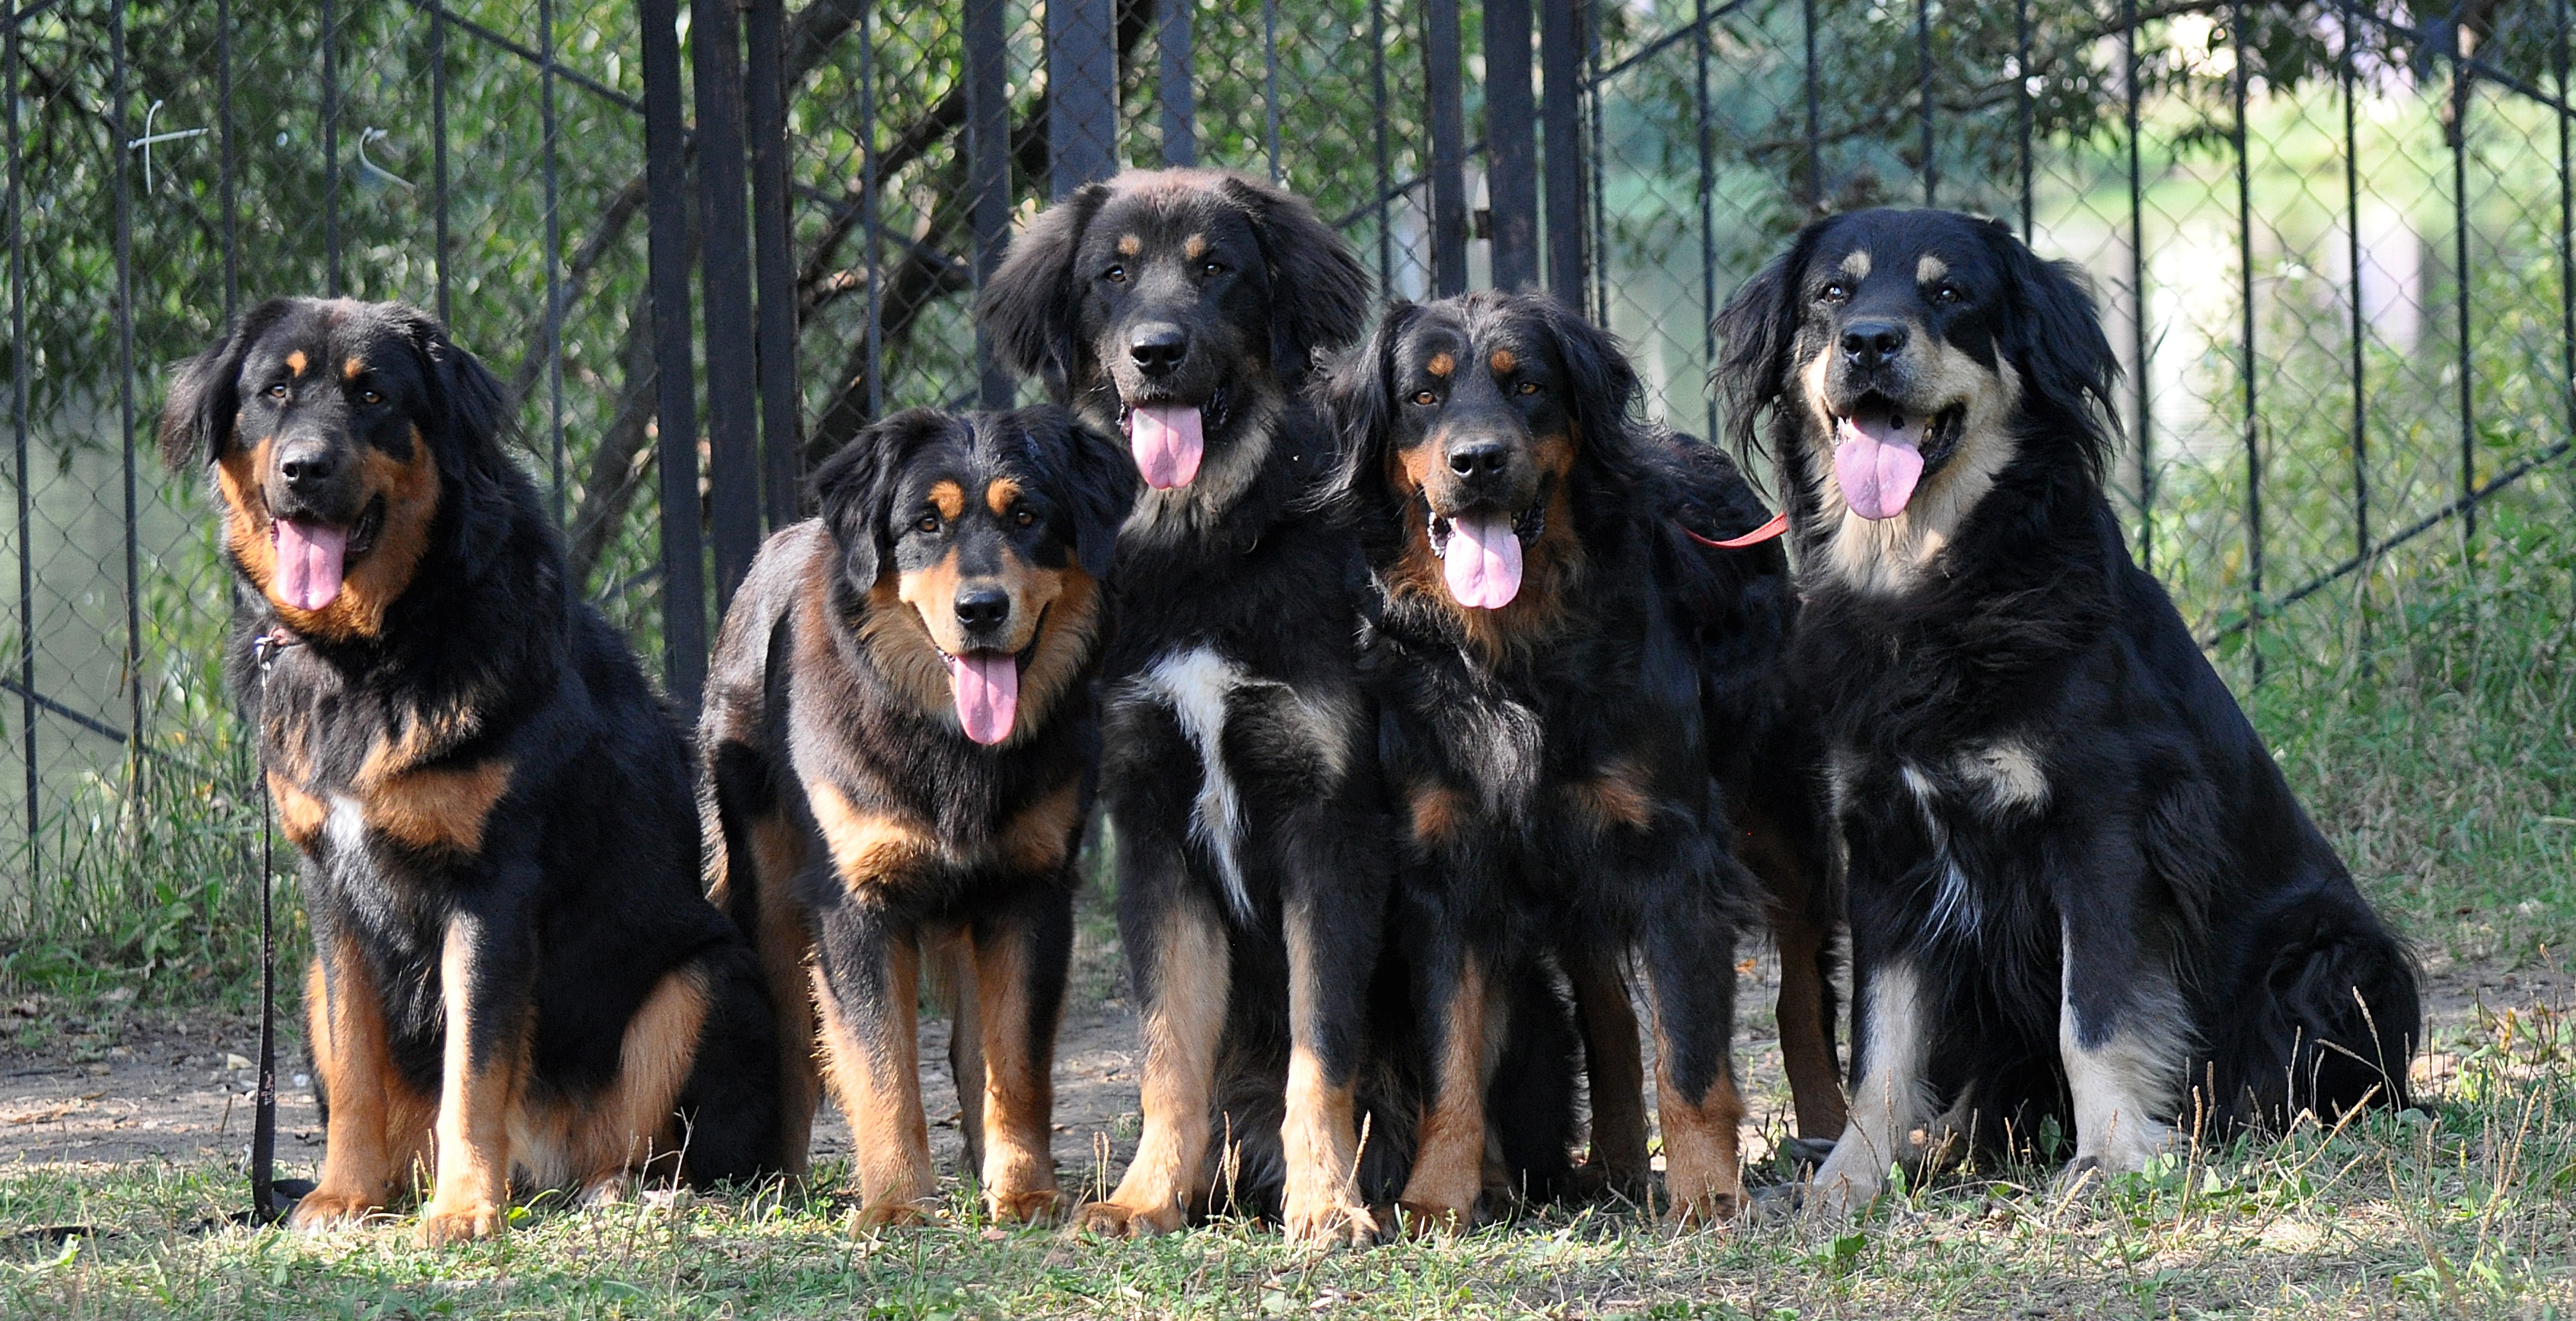 Бурят-монгольские волкодавы — огромные охранные собаки древнейшего происхождения